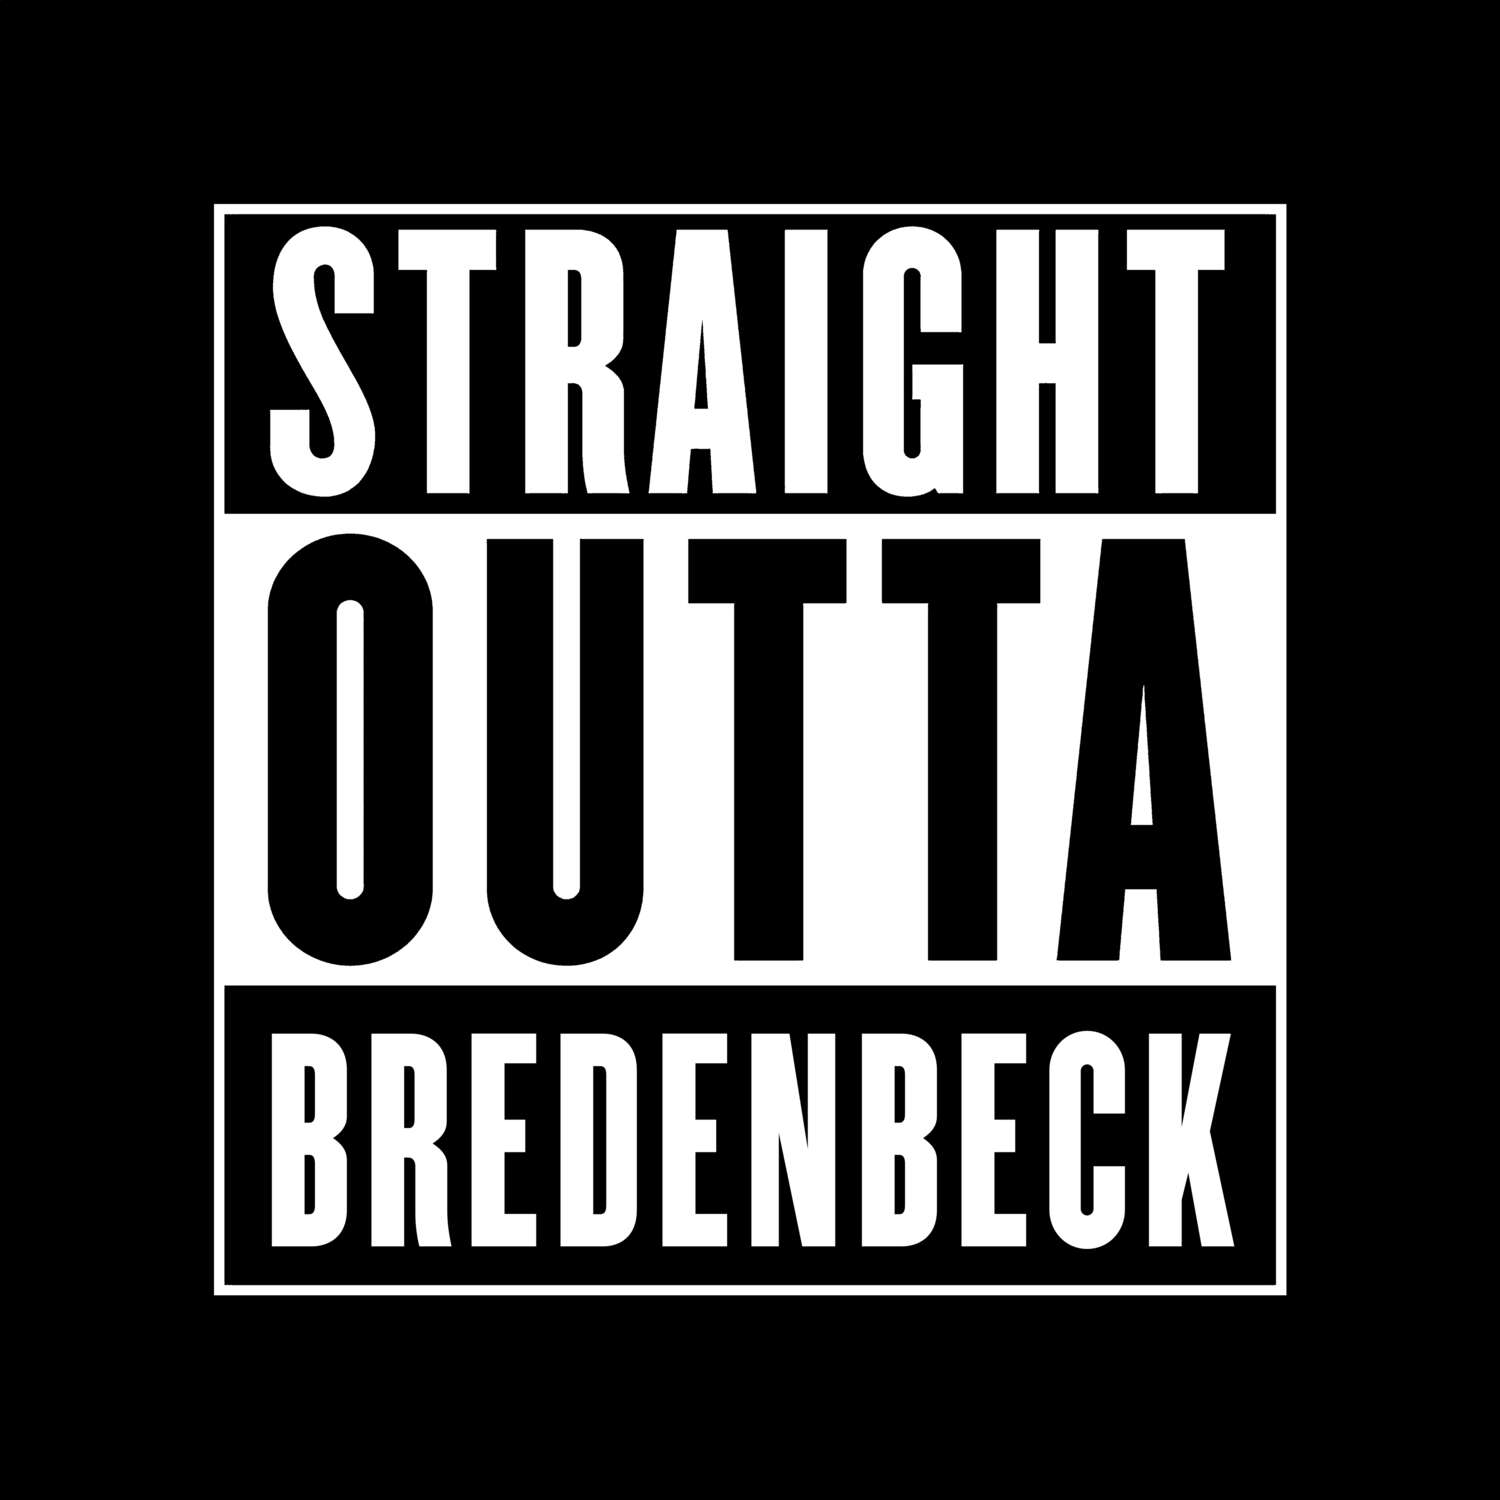 Bredenbeck T-Shirt »Straight Outta«